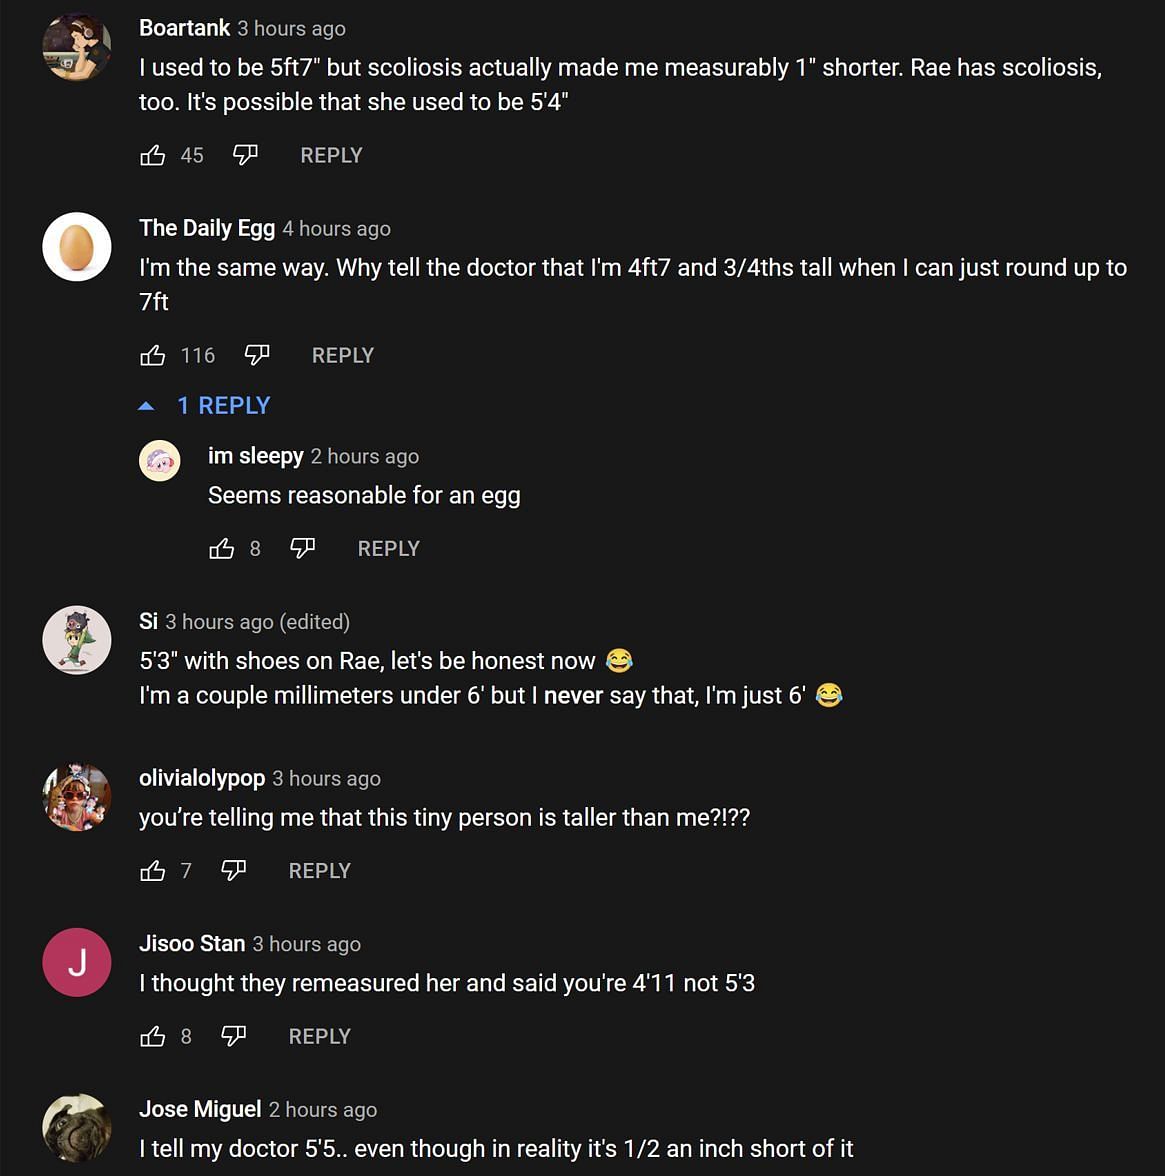 Los fanáticos en la sección de comentarios de YouTube dan su opinión sobre las declaraciones del transmisor (Imagen a través de OTV POG/YouTube)